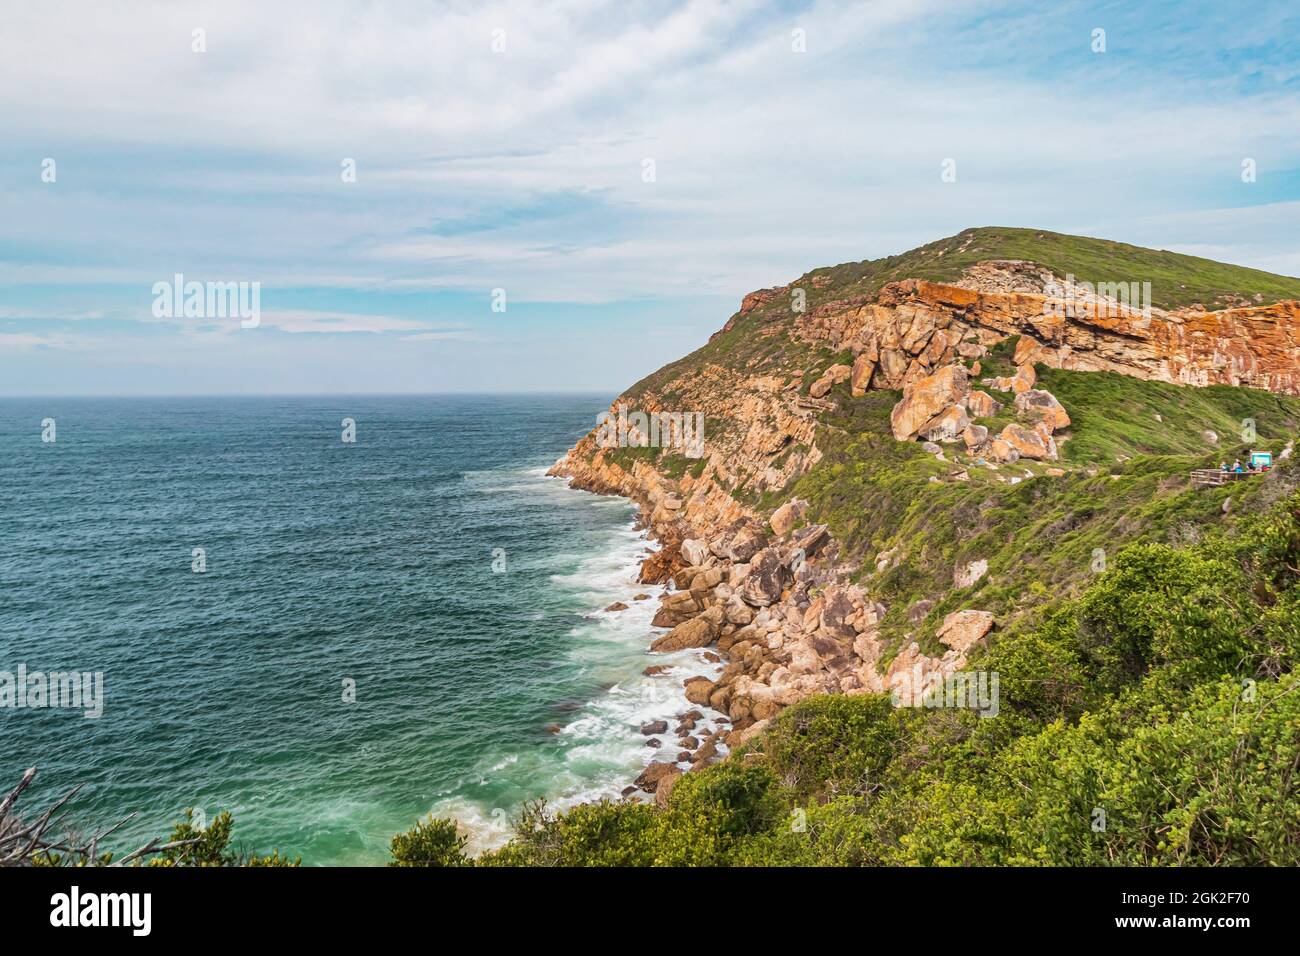 La vista della Riserva Naturale di Robberg, che è il Monumento Nazionale del Sud Africa e Sito Patrimonio Mondiale dell'Umanita' presso la Baia di Plettenberg lungo la Garden Route. Foto Stock